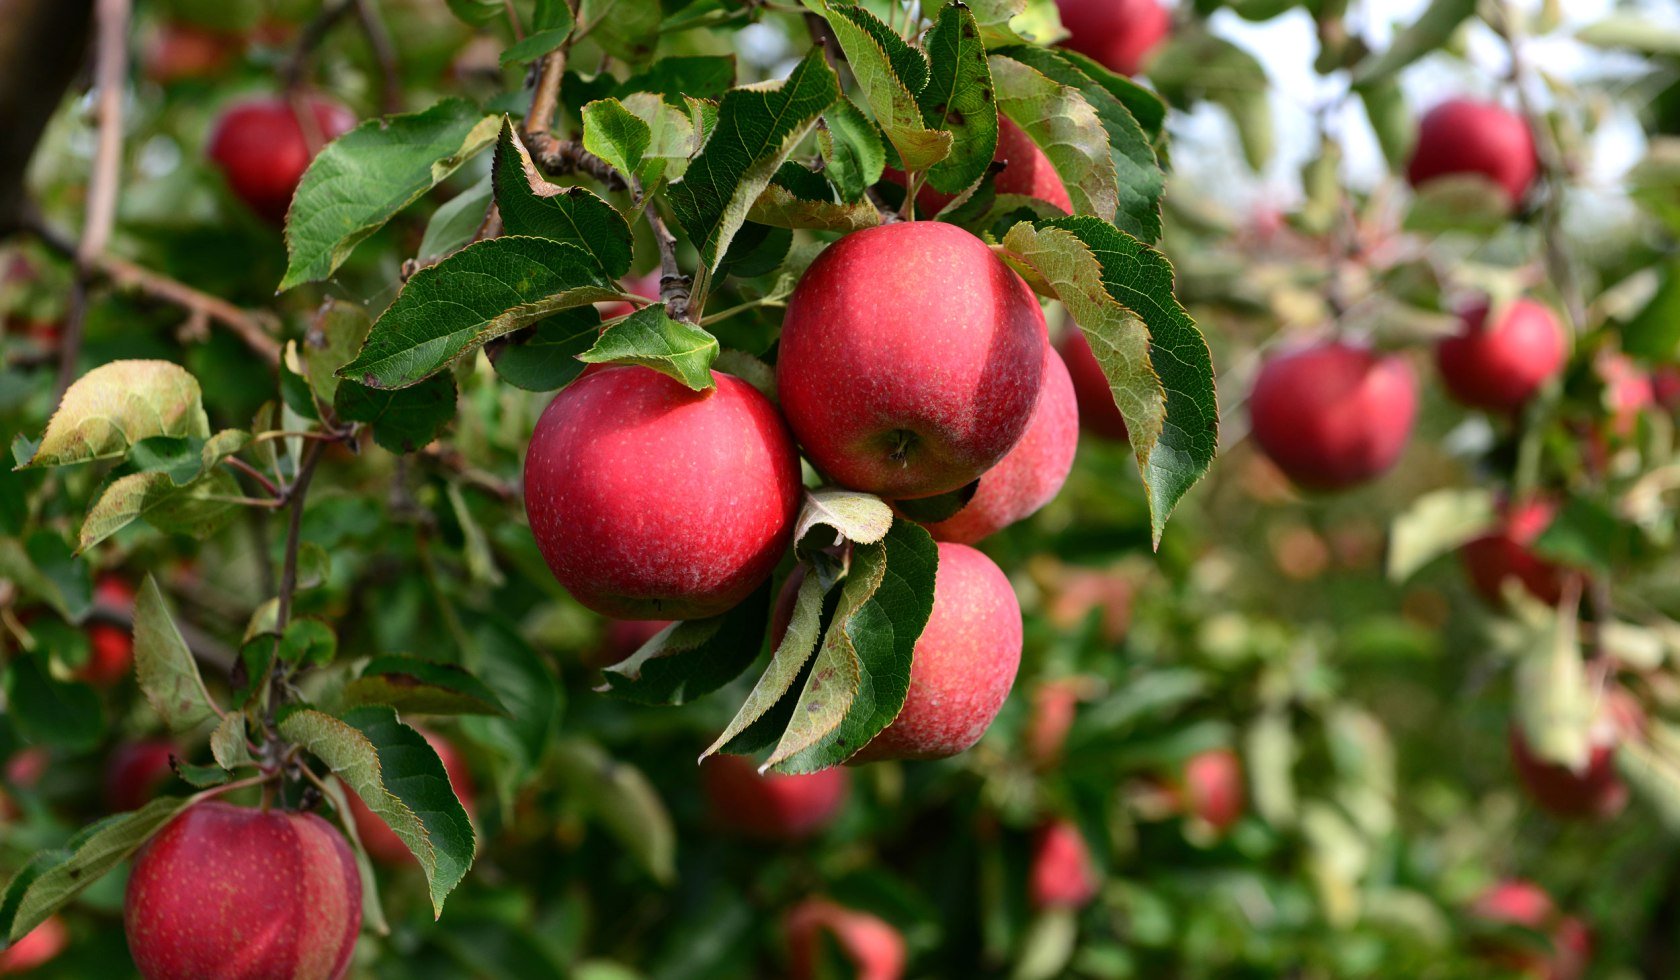 Frisch rote Äpfel am Baum, © Tourismusverband LK Stade/Elbe e.V. / Martin Elsen